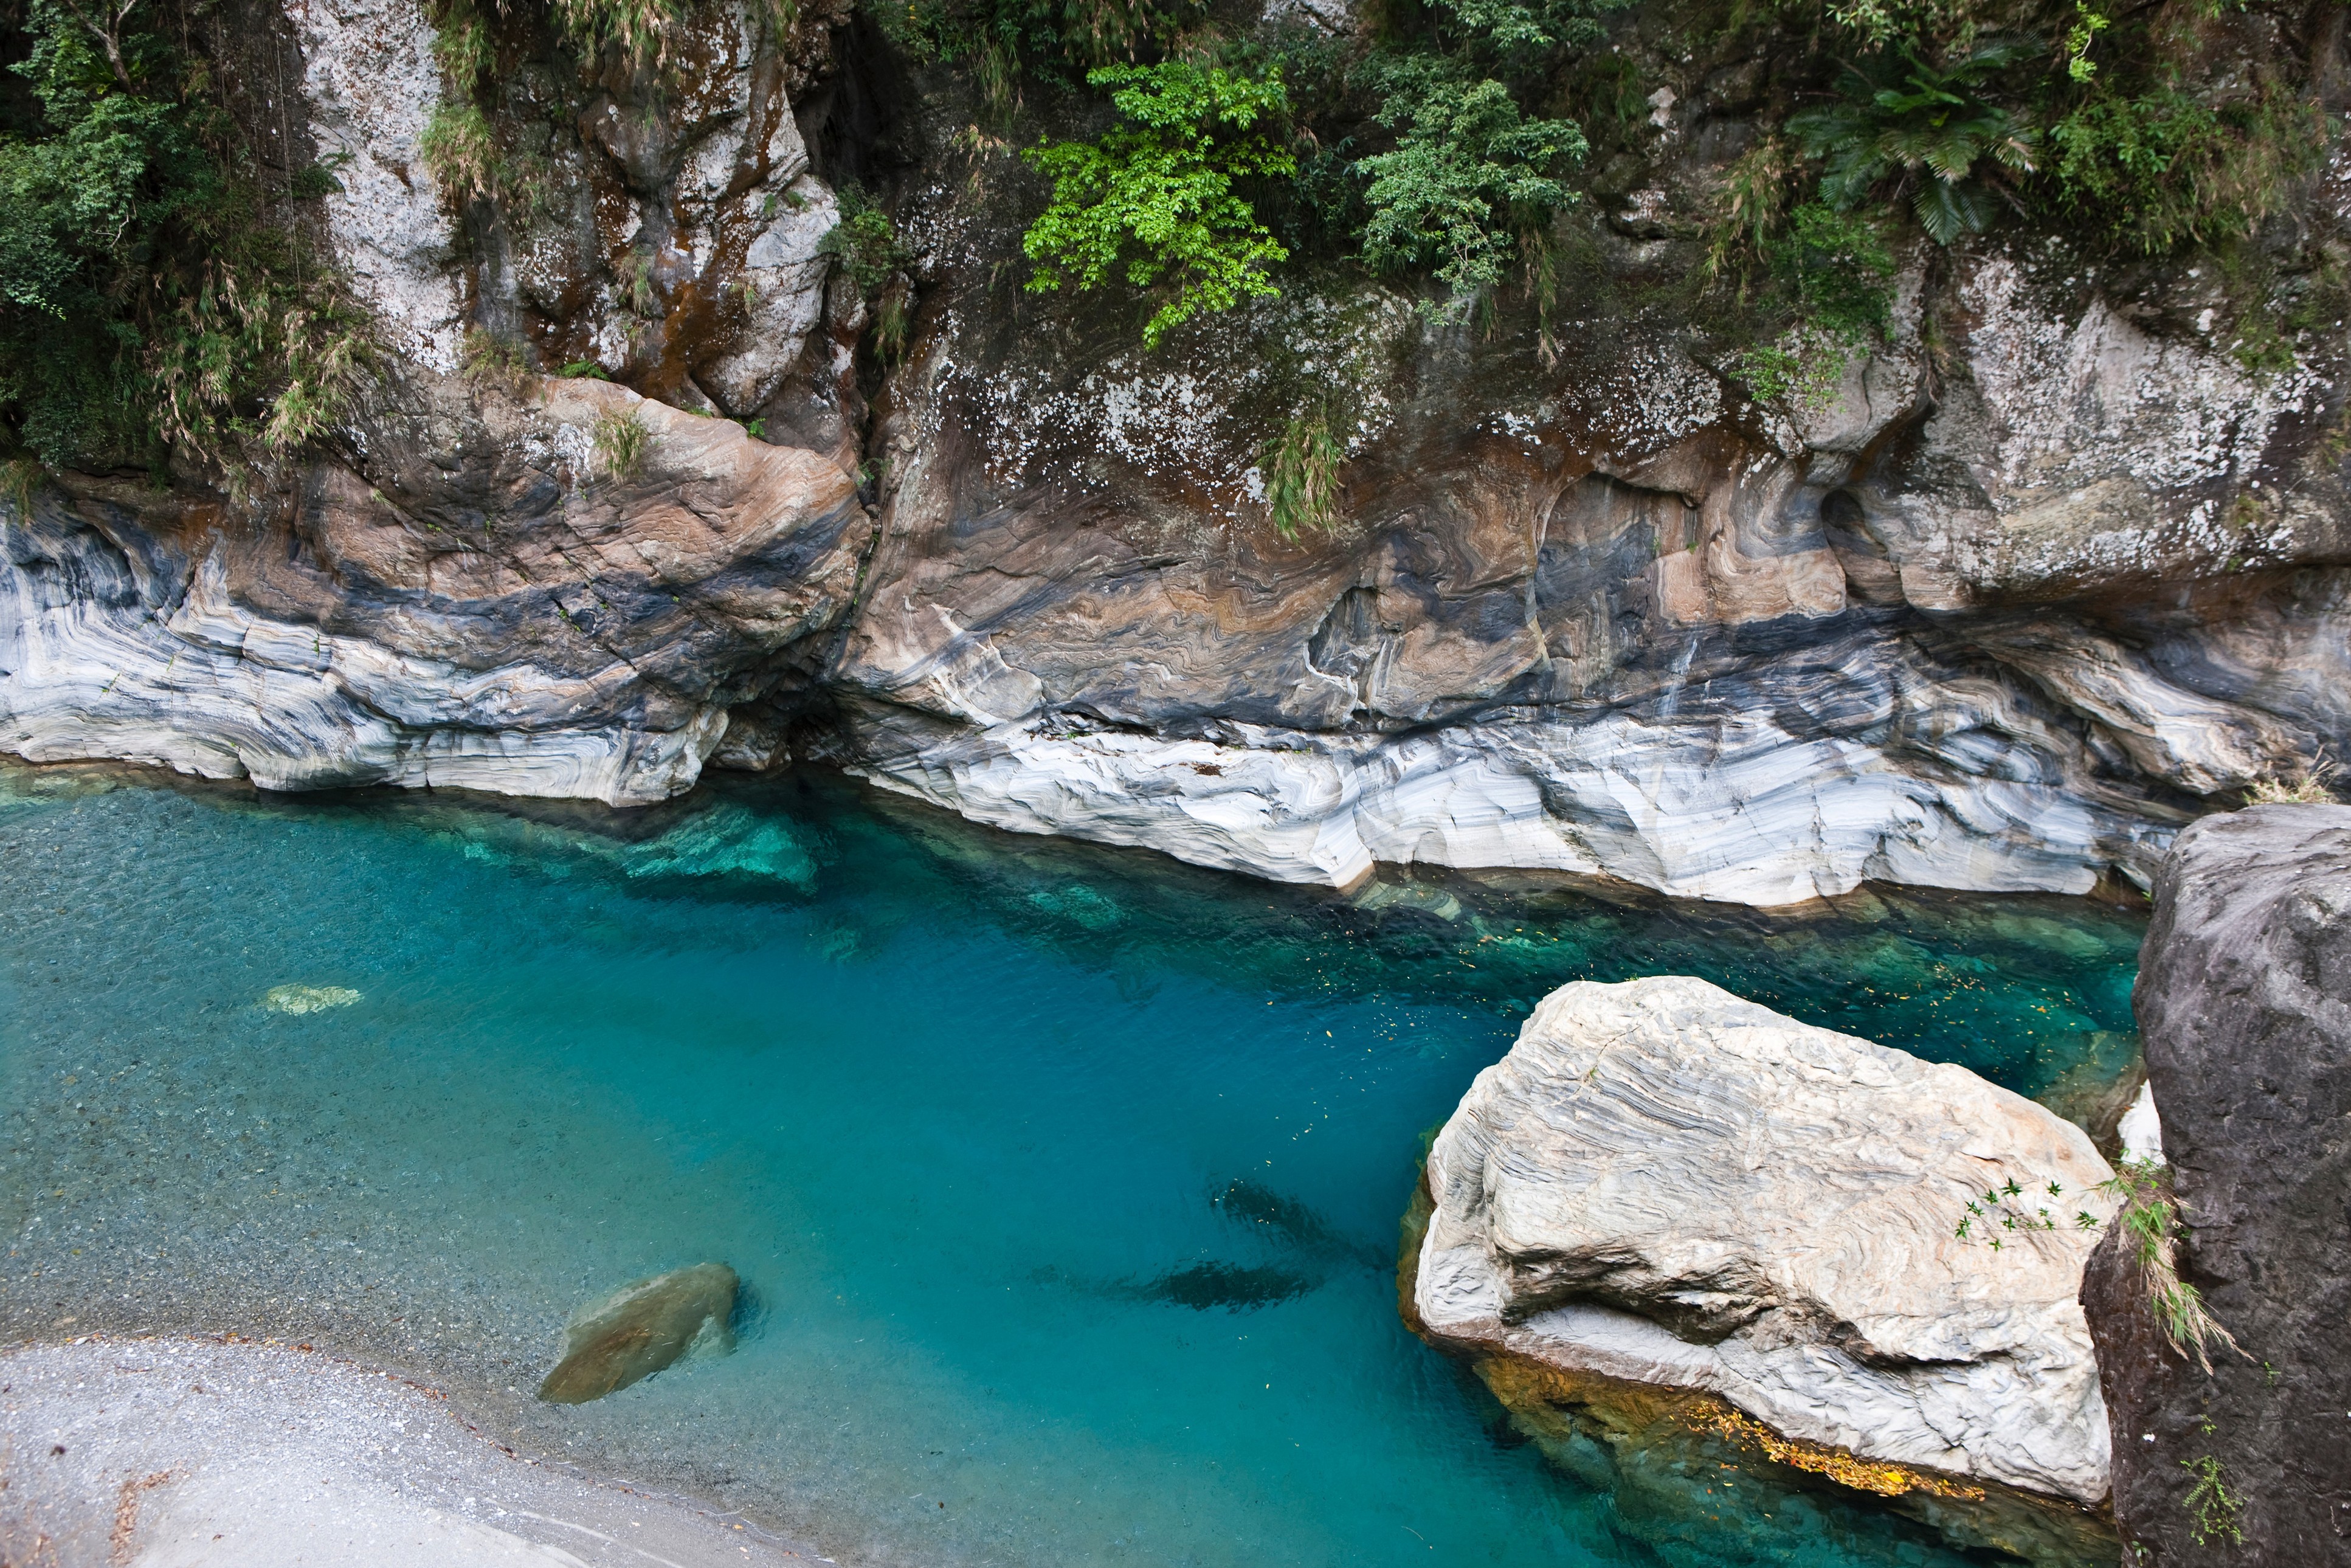 Der Taroko Nationalpark, im Osten Taiwans, mit seinen Marmor- und Granitbergen bzw. Felsen, Wasserfällen aus Gesteinsspalten, Hängebrücken und vielen weiteren Naturattraktionen, ist besonders durch seine 19 km lange Taroko-Schlucht